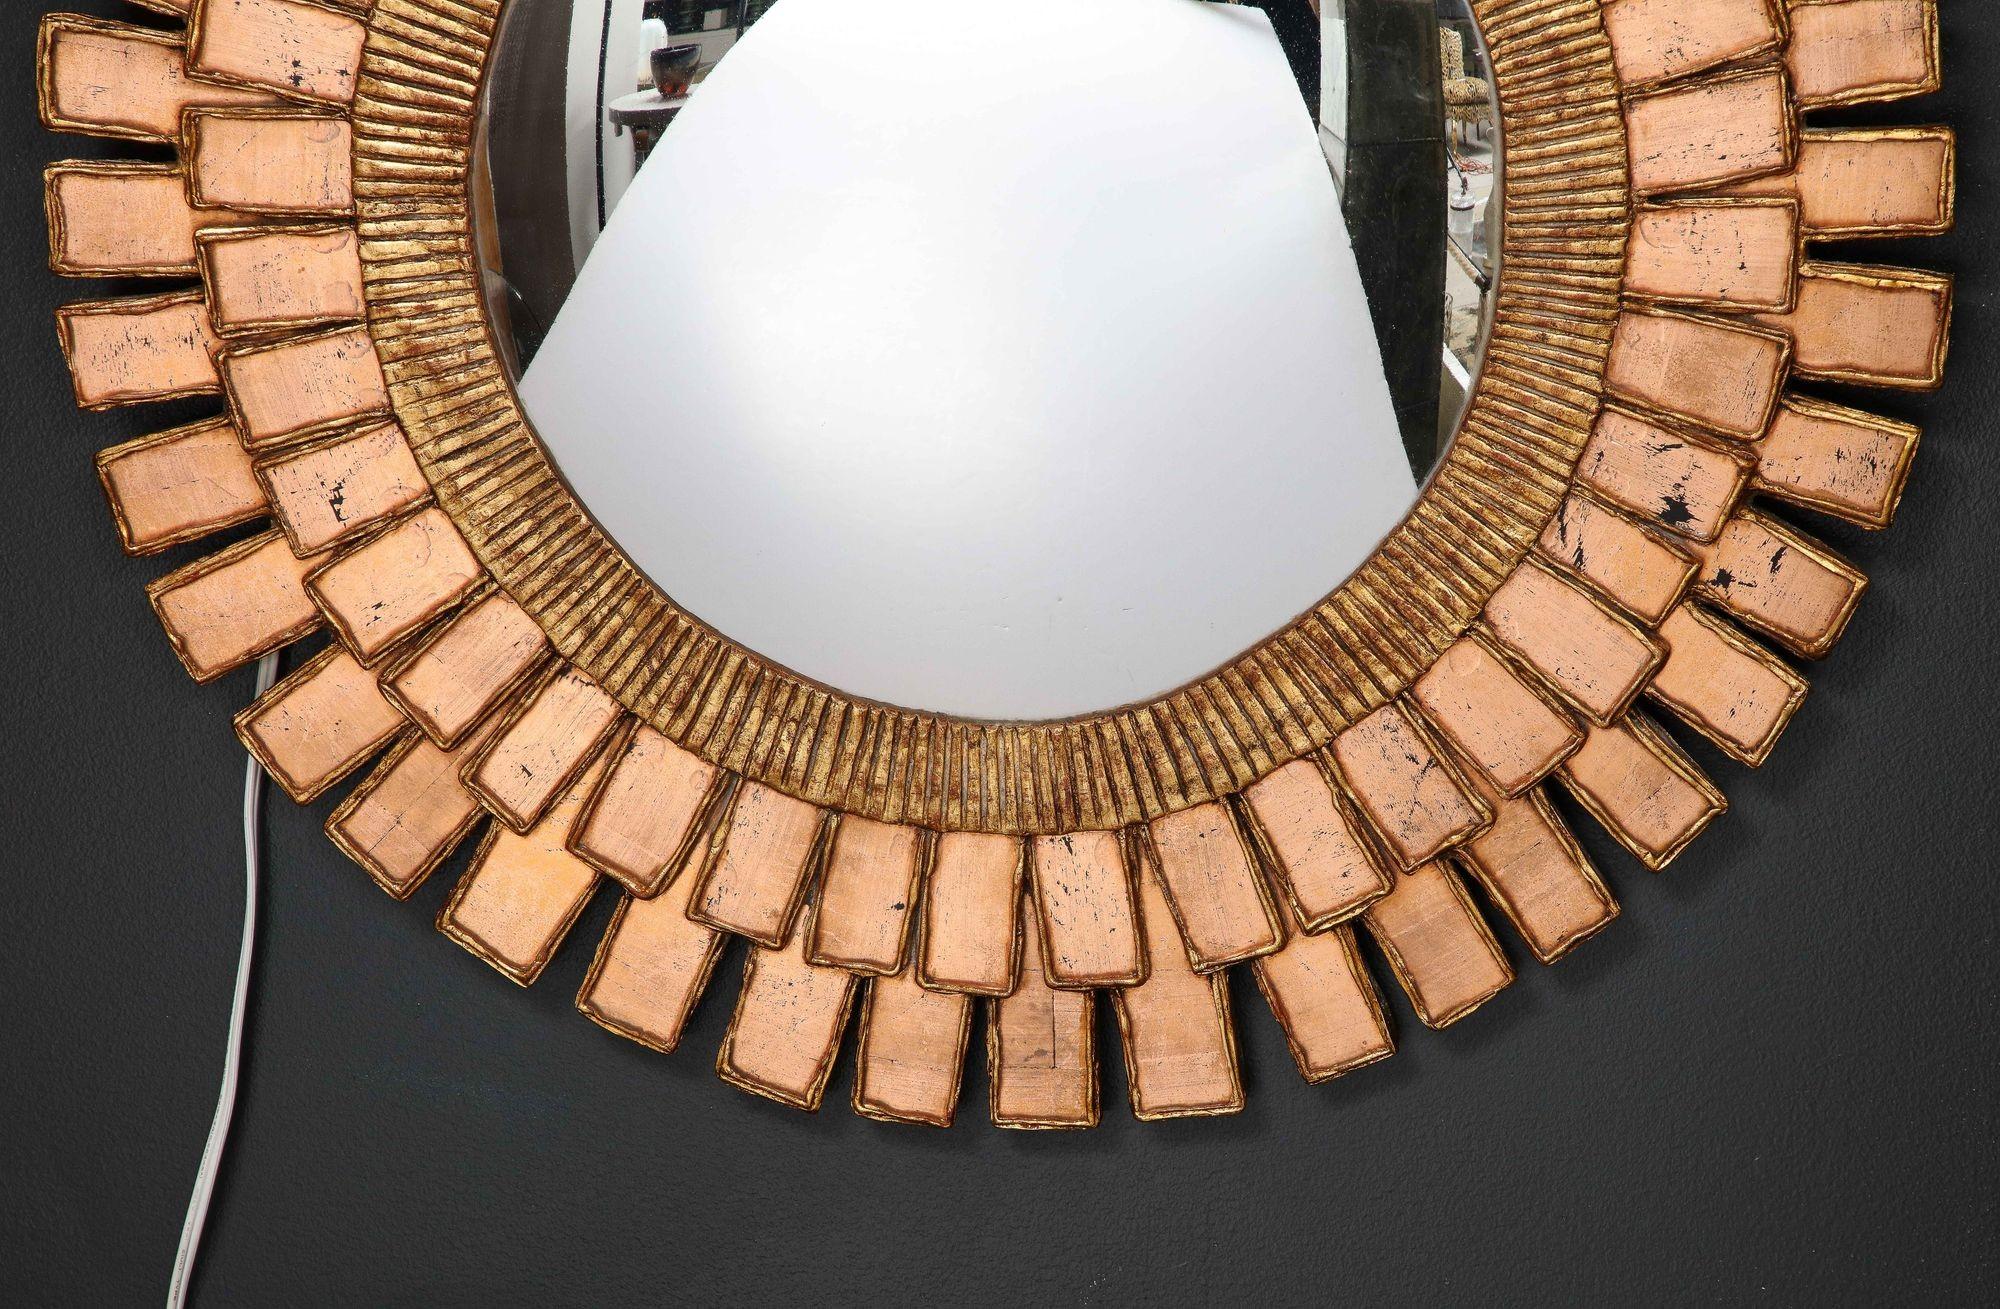 Ein atemberaubender Spiegel im Stil von Line Vautrin aus Harz und Holz.